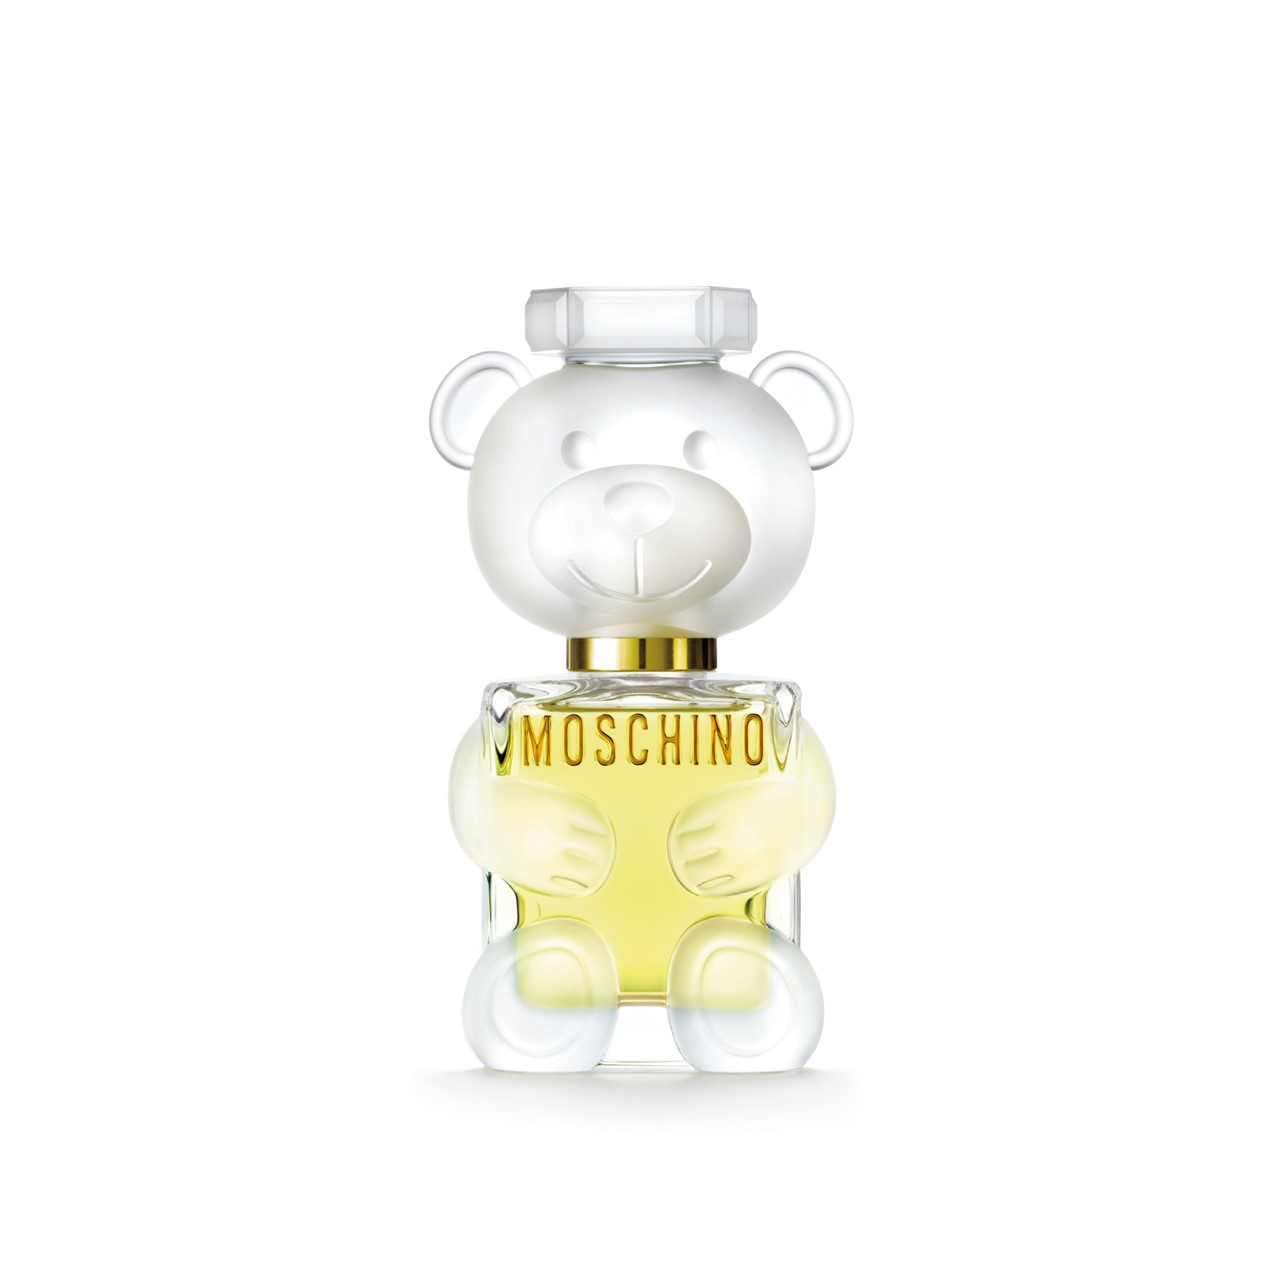 Moschino Toy 2 Eau de Parfum 50ml (1.7fl.oz.)